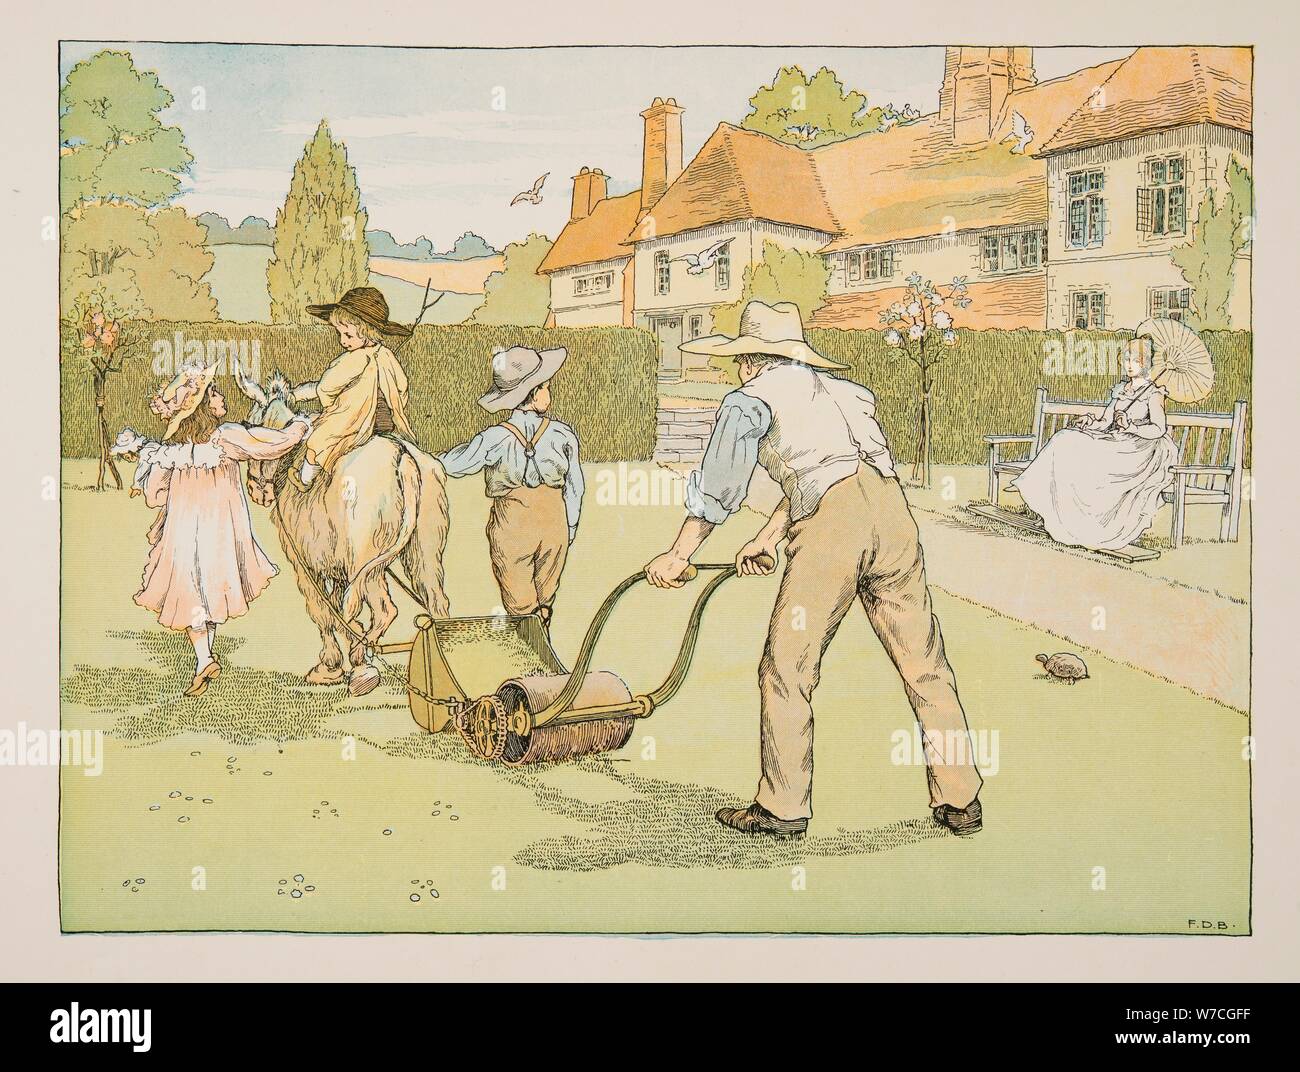 Le jardinier, de quatre et vingt travailleurs, pub. Lithographie couleur (1900) Banque D'Images